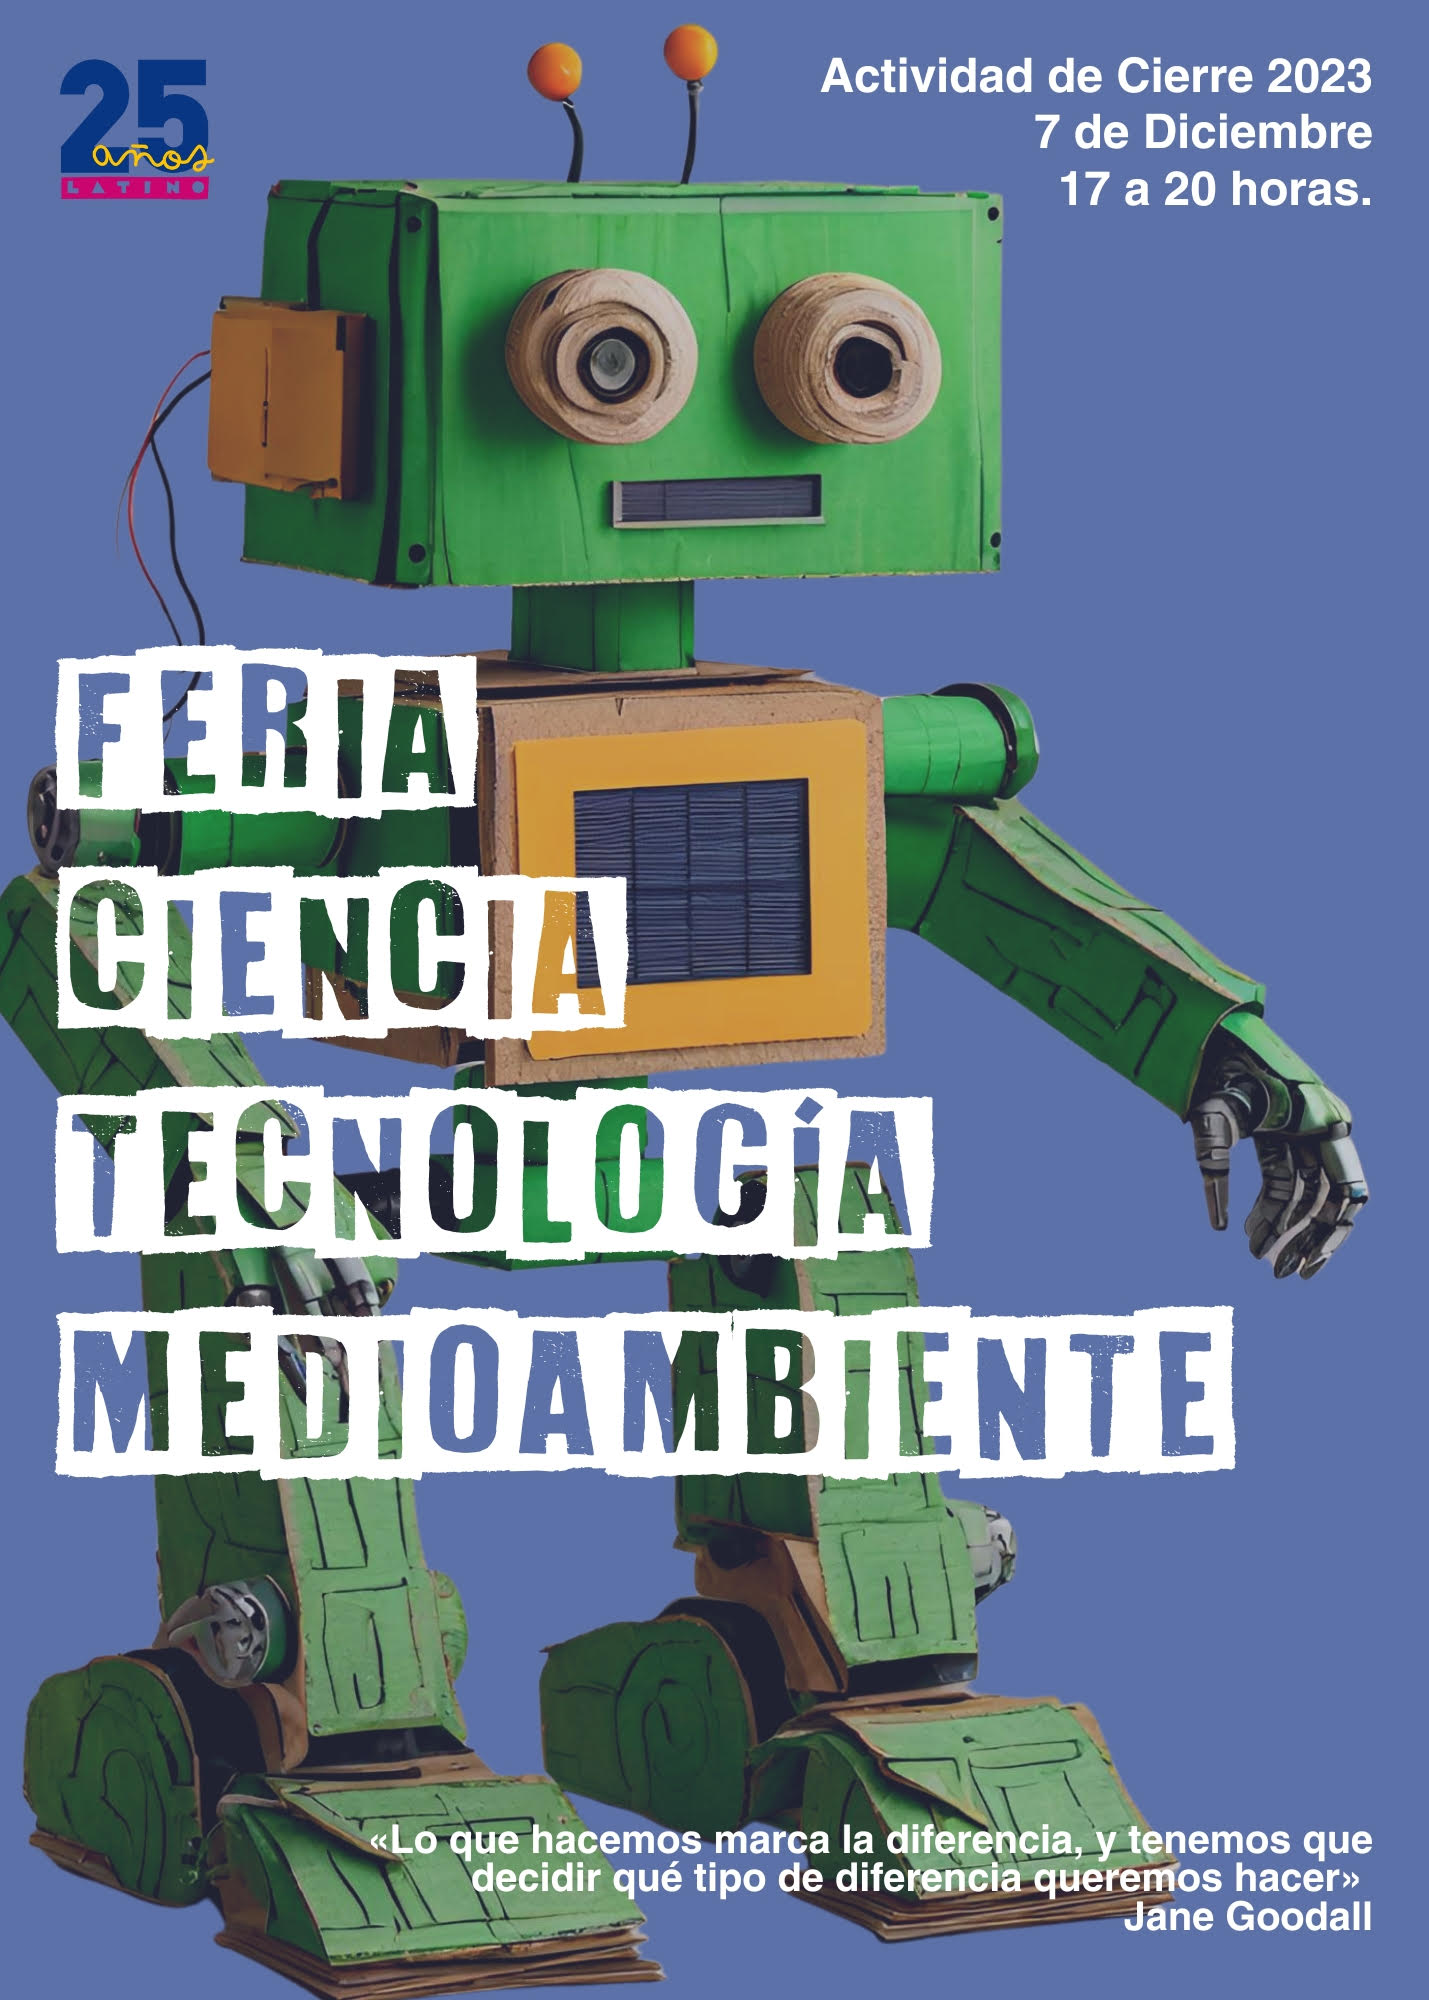 Afiche Feria de Ciencia, Tecnología y Medioambiente 2023